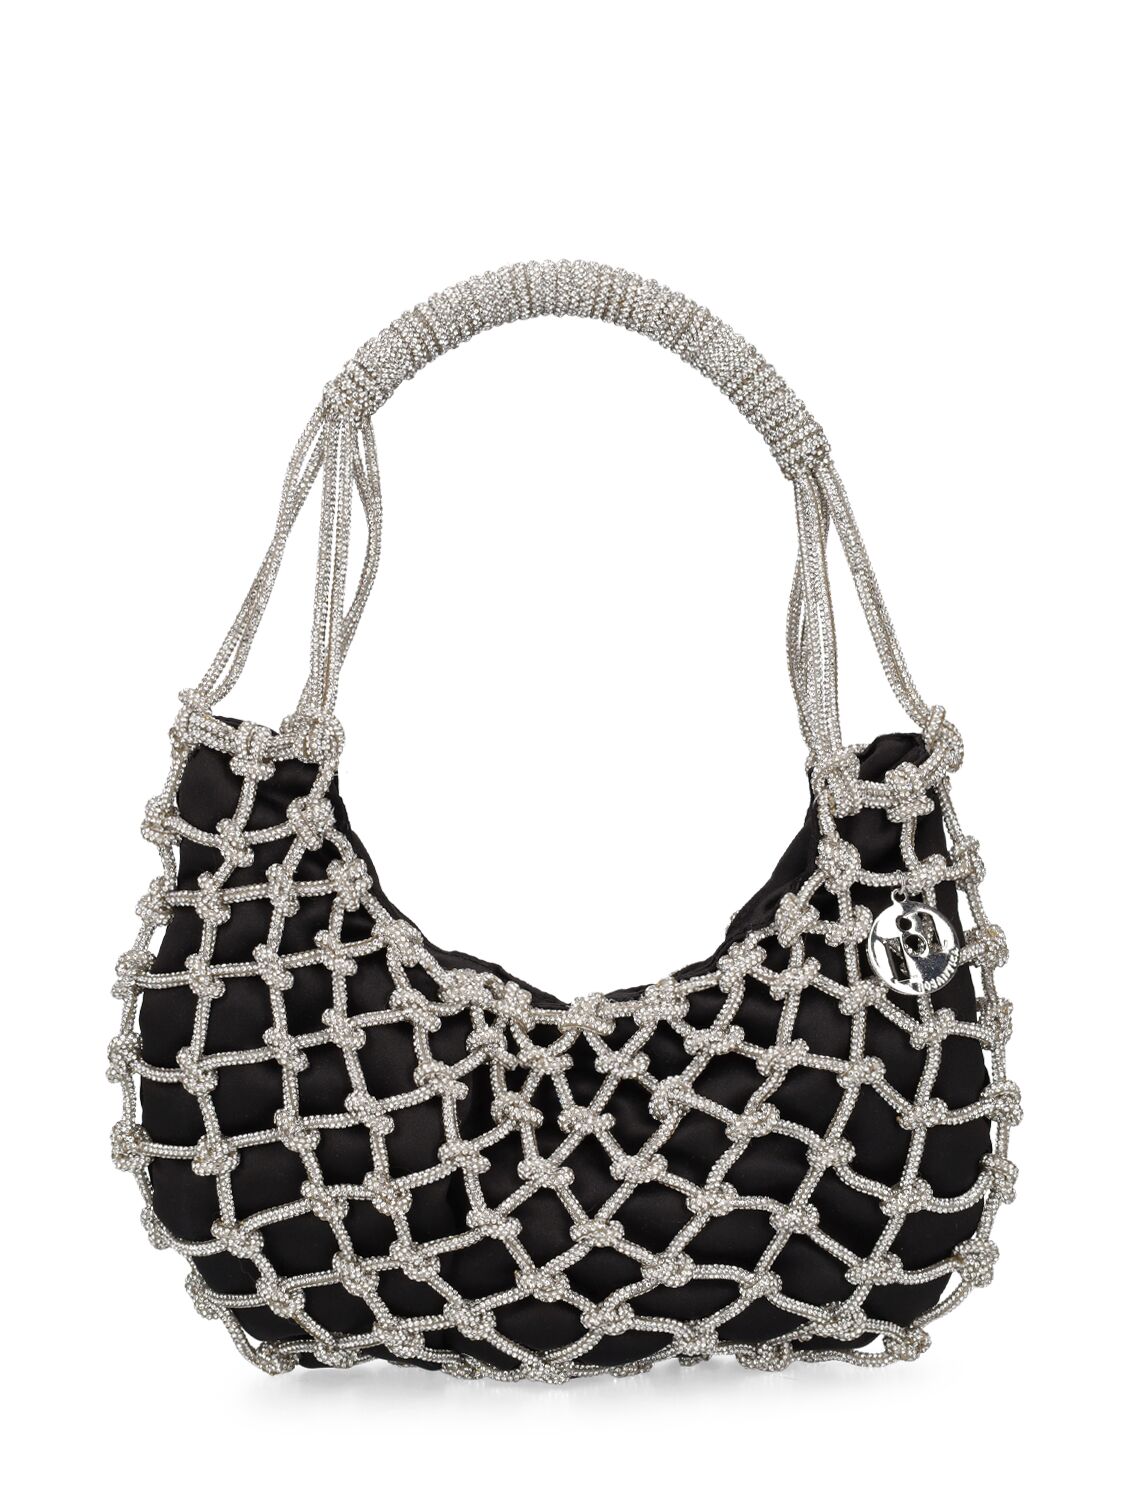 Rosantica Nodi Crystal Top Handle Bag In Silver,black